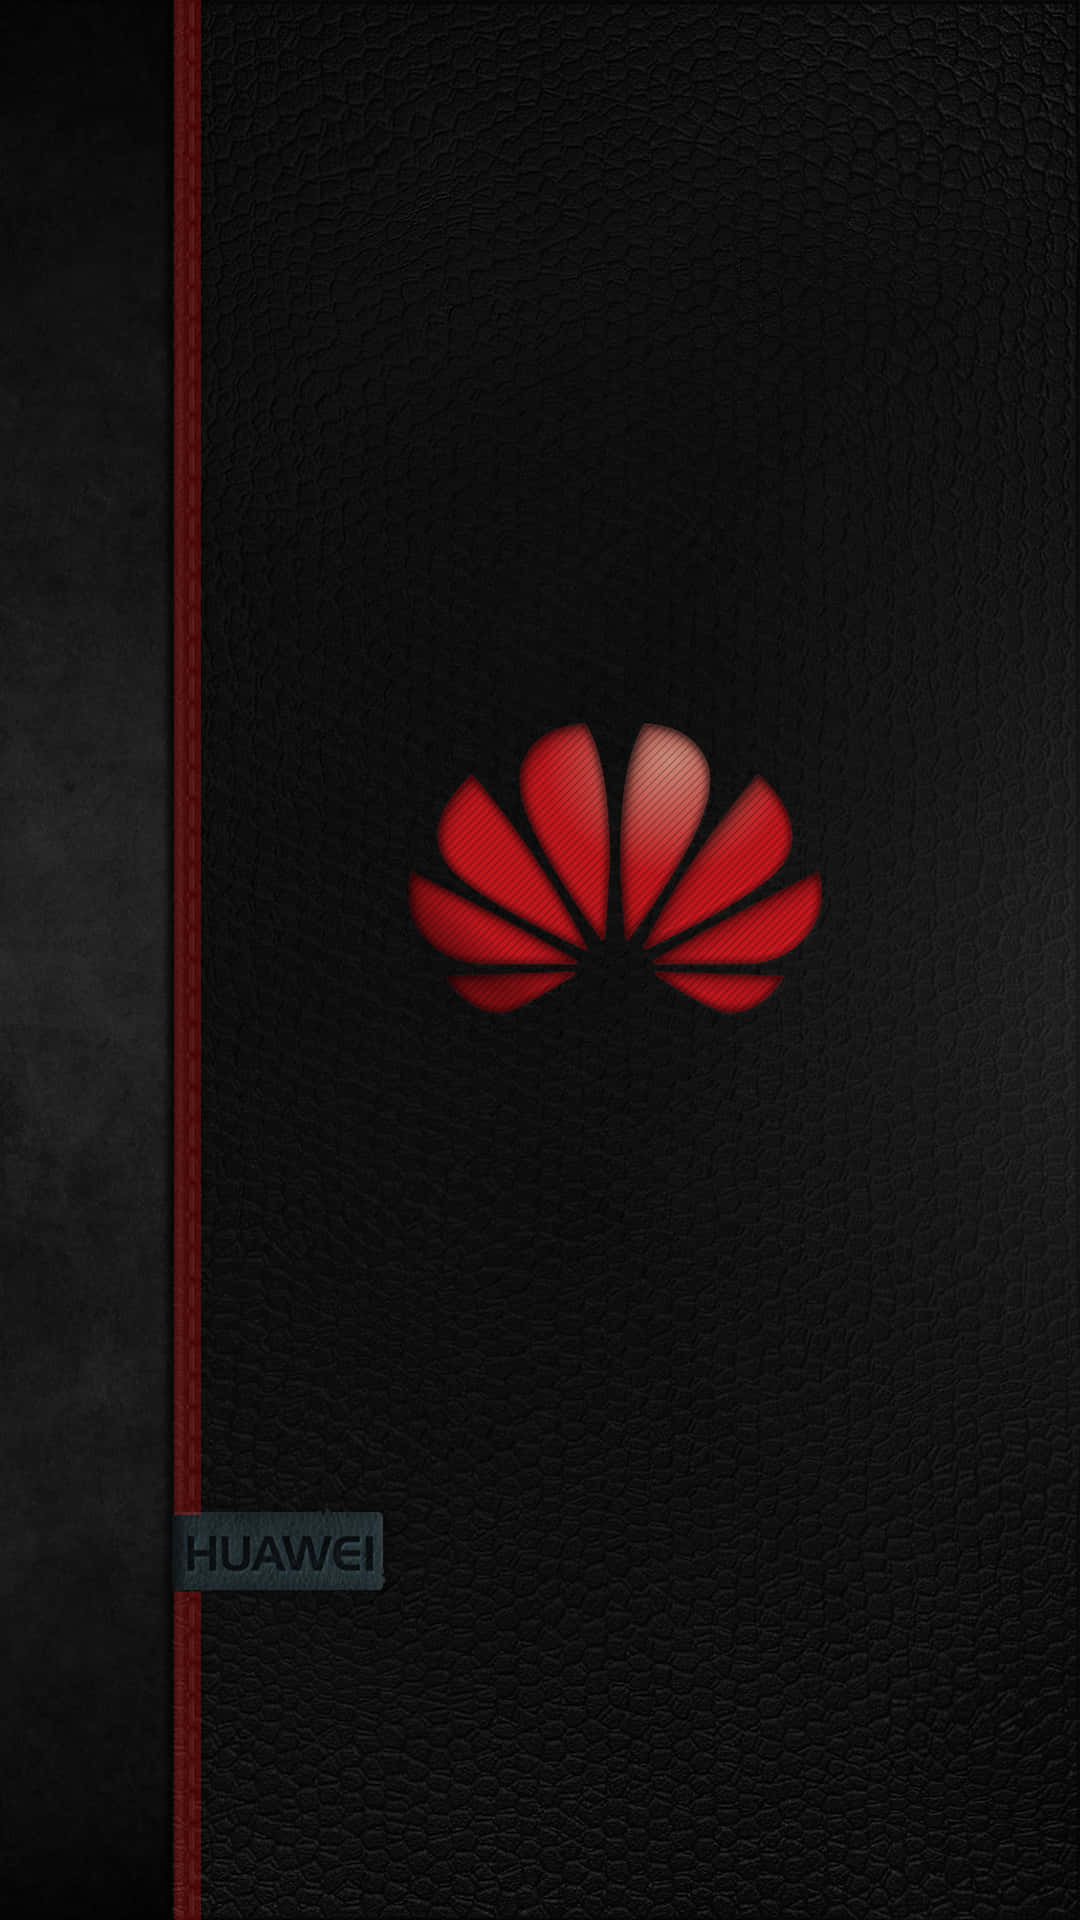 Телефон хуавей на столе. Обои на телефон Huawei. Обои вертикальные логотип Huawei. Обои для смартфона Хуавей. Обои для Хуавей вертикальные.